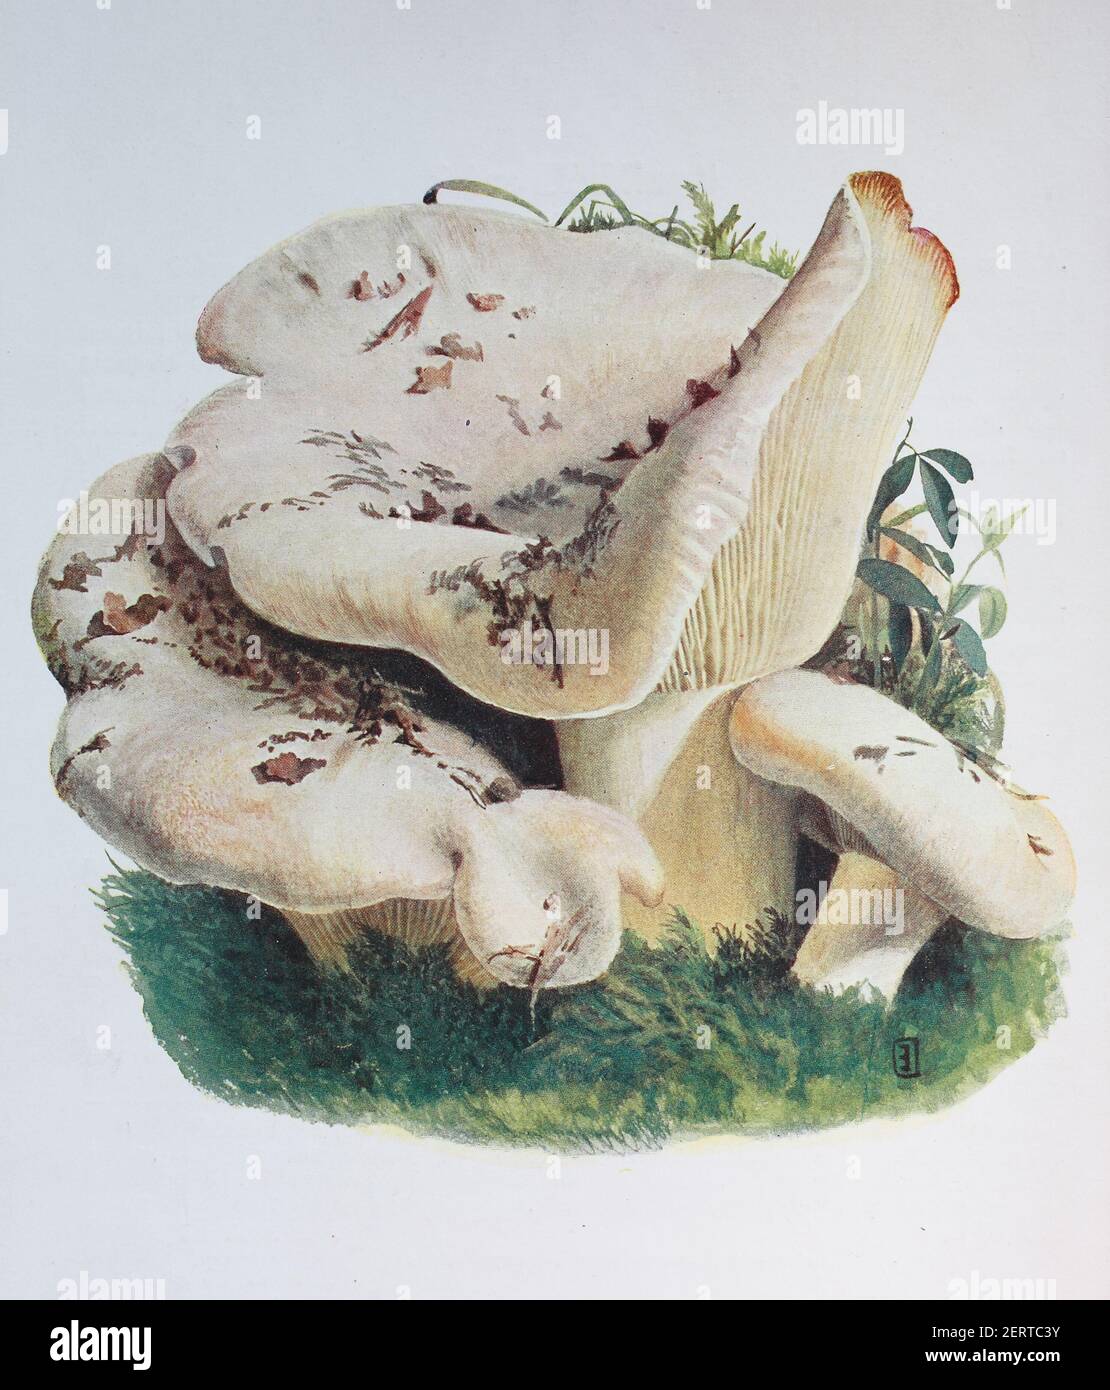 Lactifluus vellereus (in precedenza Lactarius vellereus), comunemente noto come la capsula di latte delle pulci, è un fungo abbastanza grande nel genere Lactifluus, riproduzione digitale di un'immagine di Emil Doerstling (1859-1940) Foto Stock